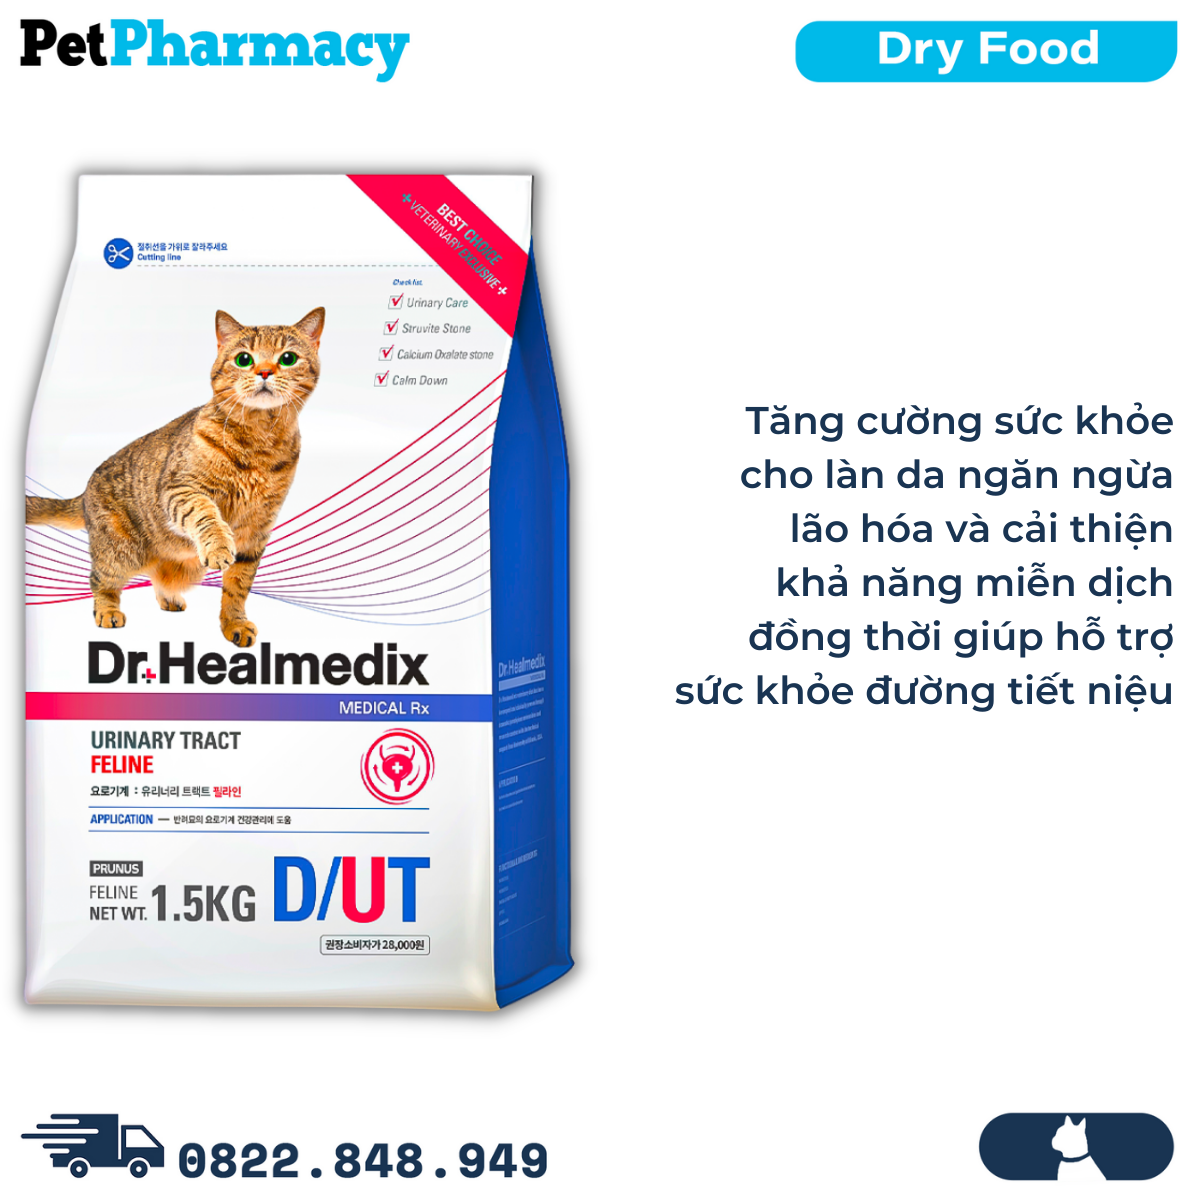  Thức ăn mèo Dr.Healmedix Urinary Tract Feline D/UT 1.5kg - Hỗ trợ điều trị sỏi thận, giảm stress PetPharmacy 